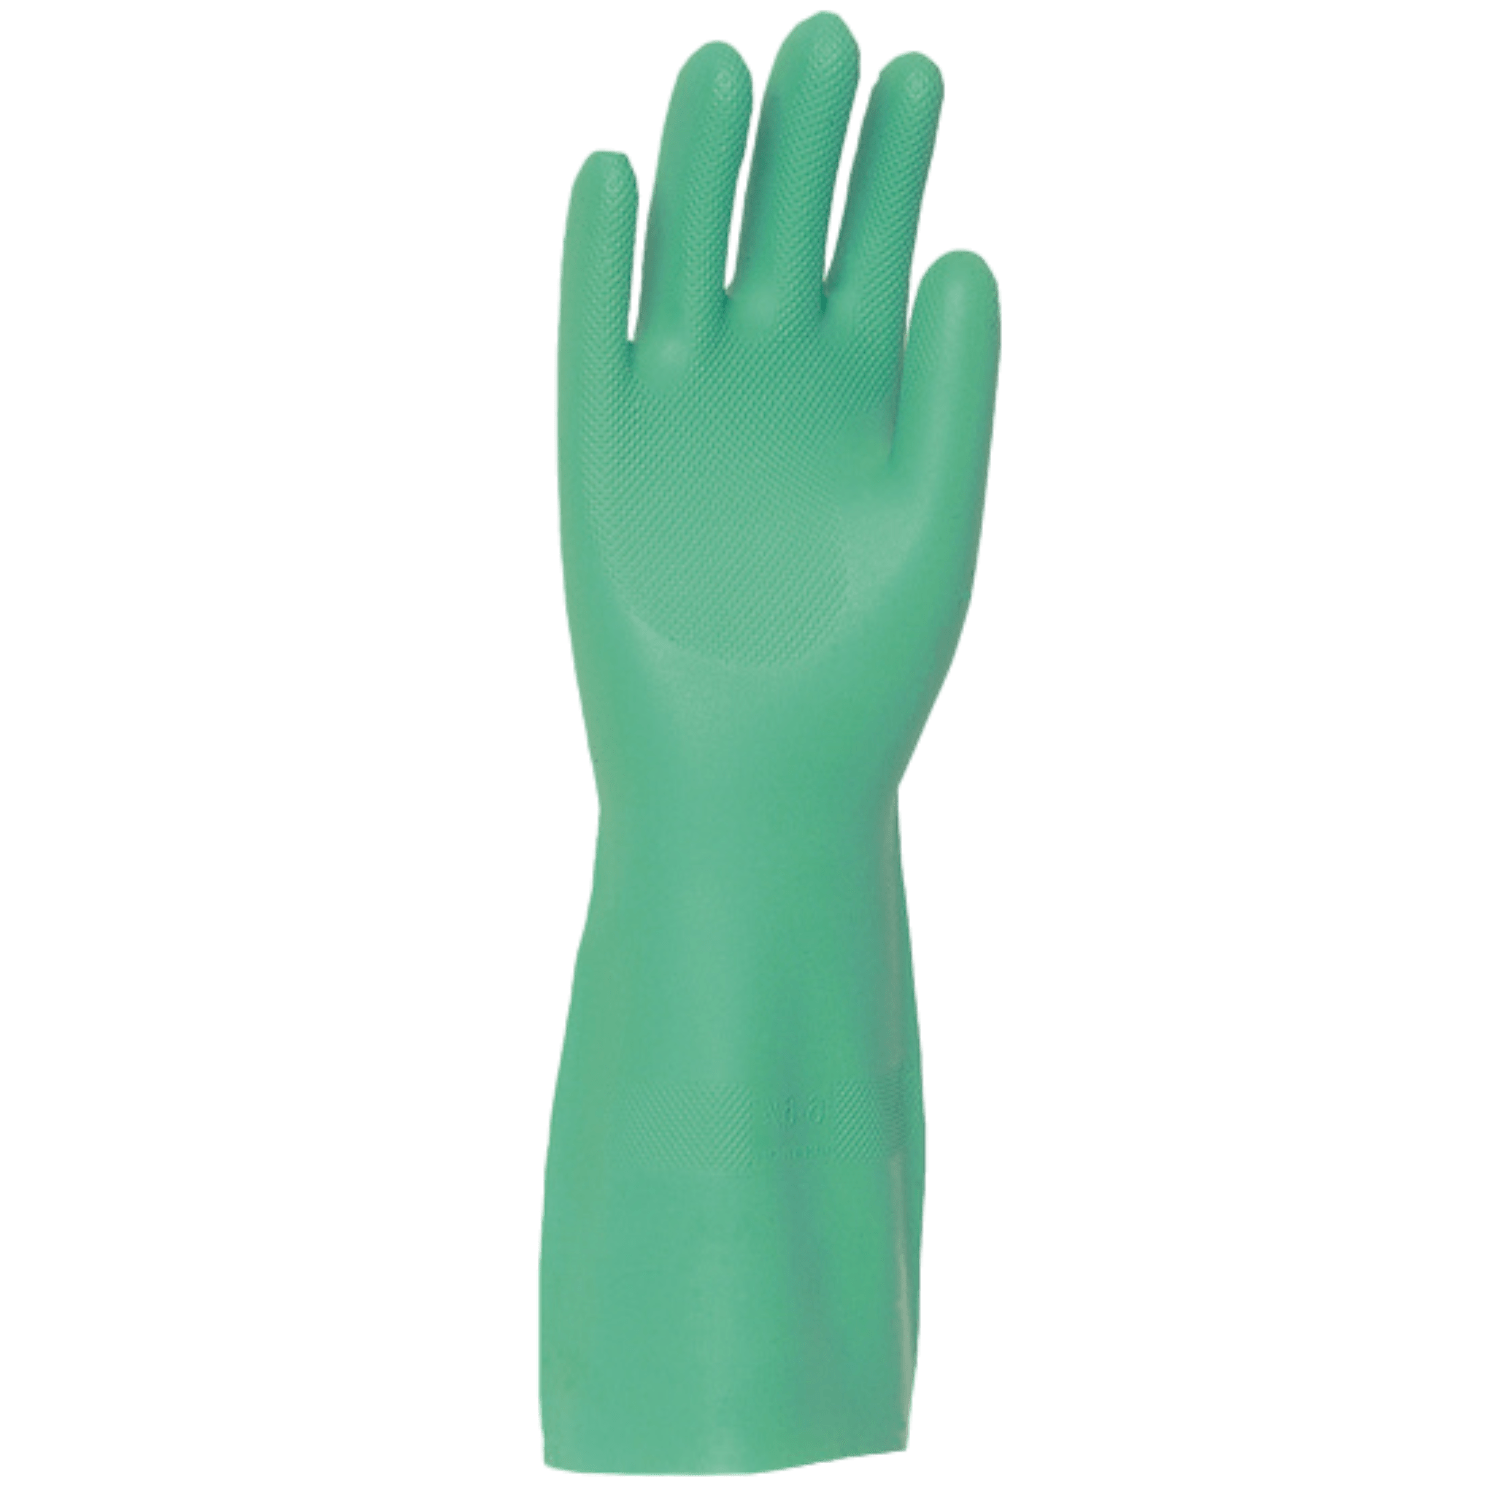 Gant protection chimique nitrile lourd vert flocké coton 41cm taille 10 photo du produit